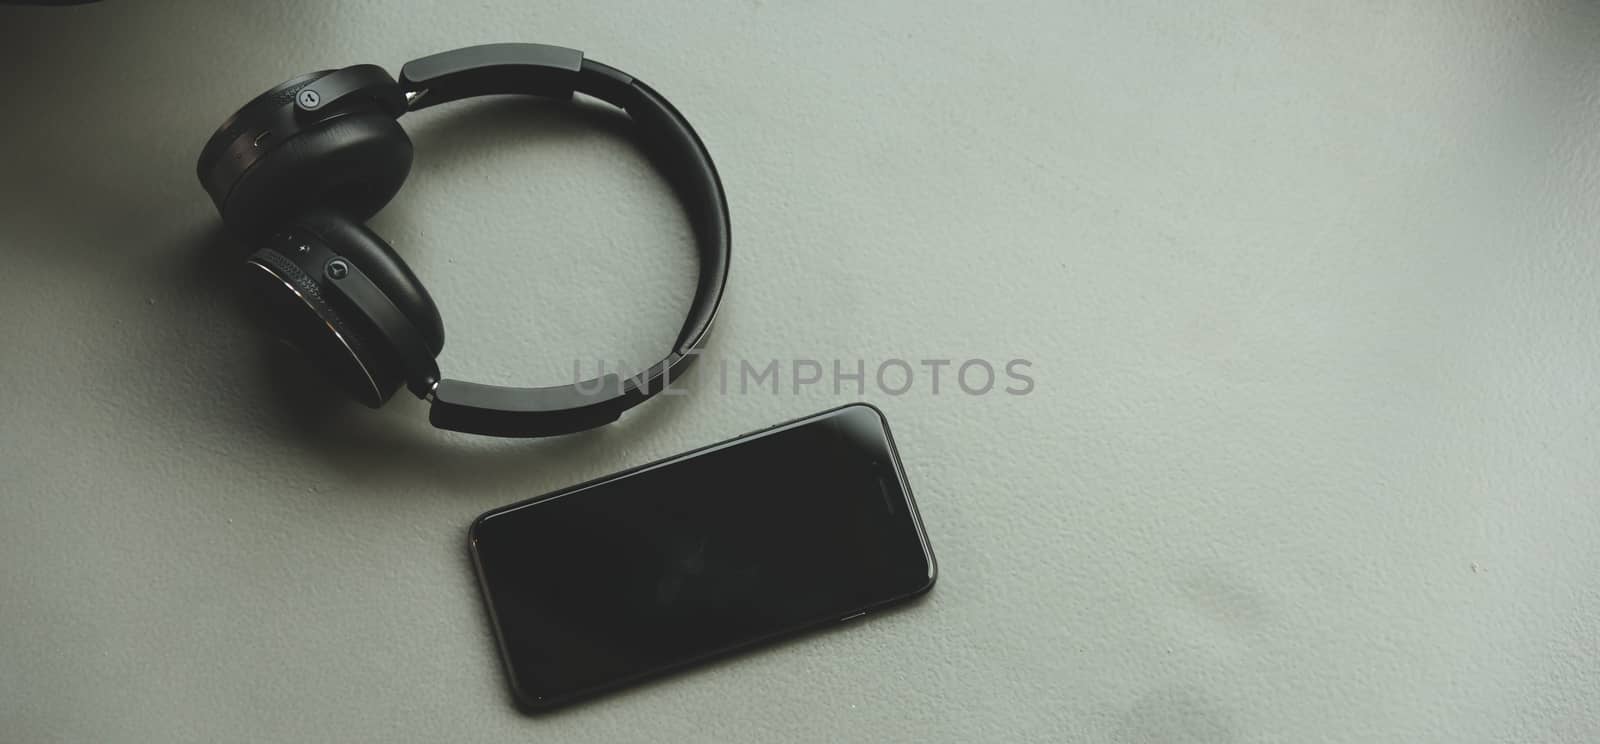 Music headphones and smart phone on rubber floor by Sorapop